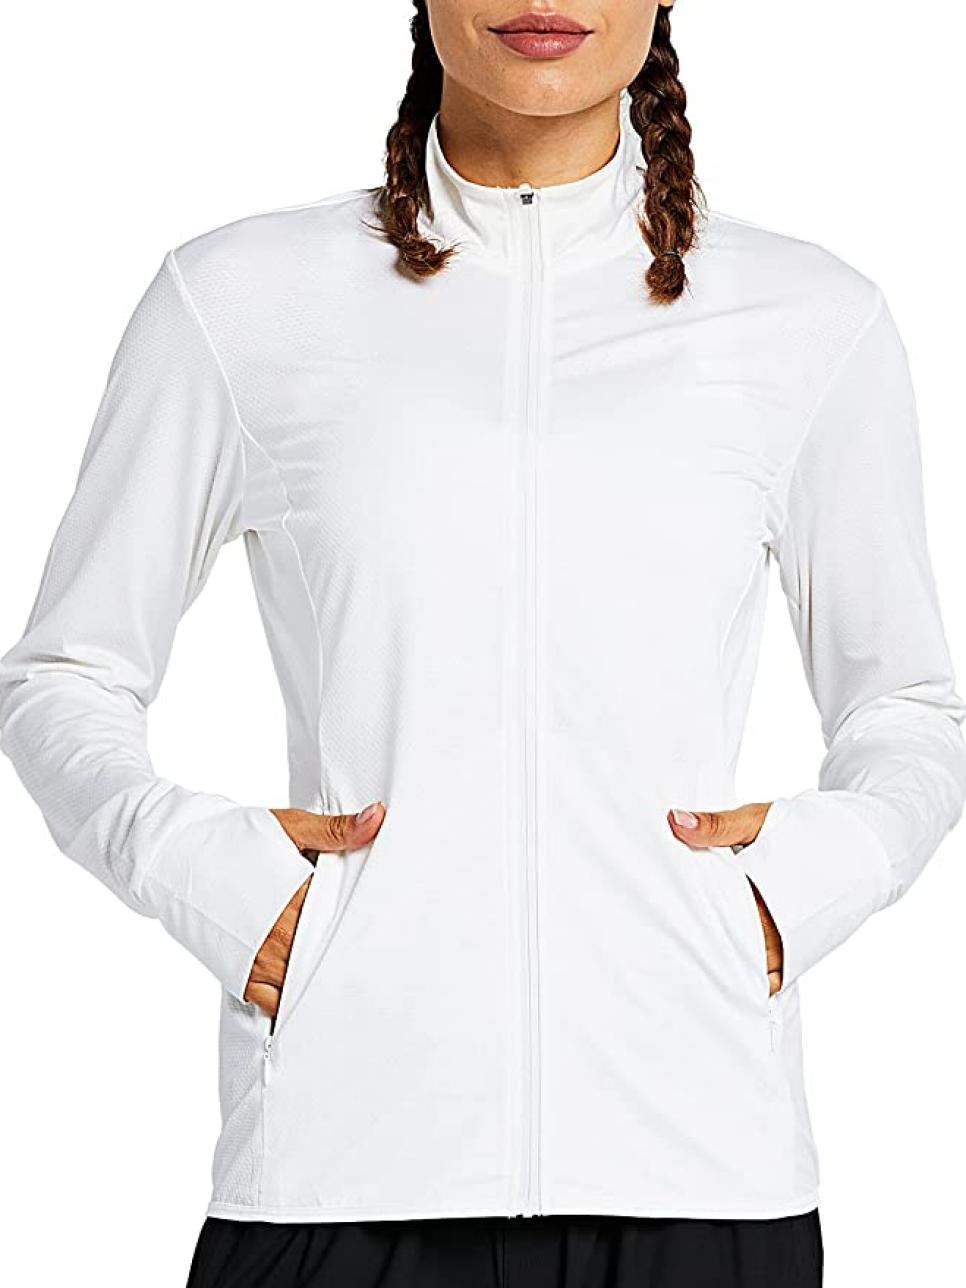 rx-amazonzuty-womens-long-sleeve-upf-50-golf-shirt.jpeg